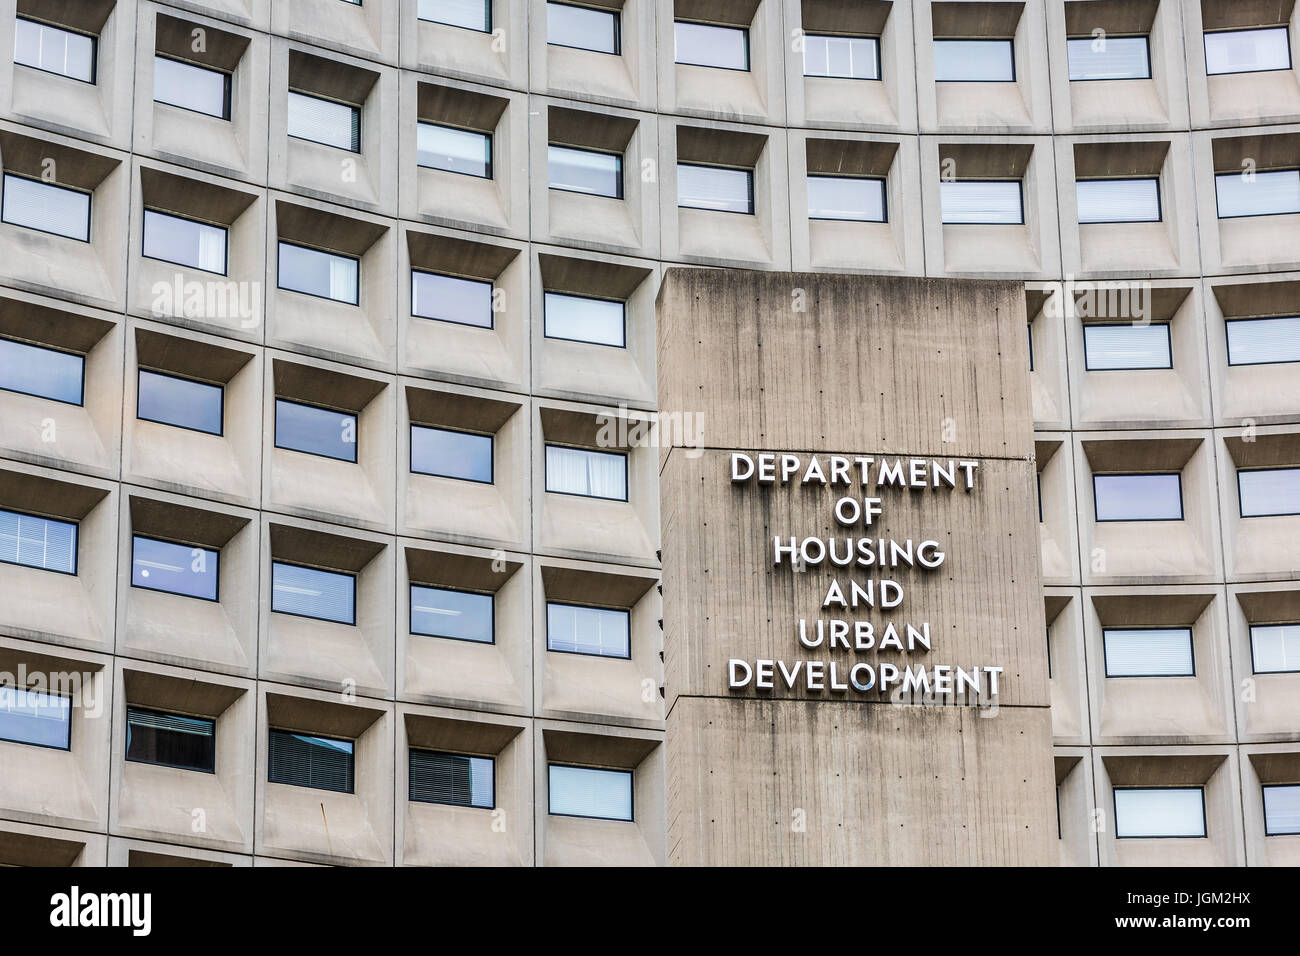 Washington DC, USA - 3. Juli 2017: Abteilung von Gehäuse und städtische Entwicklung in der Innenstadt mit Nahaufnahme von Zeichen und Gebäude Fenster Stockfoto